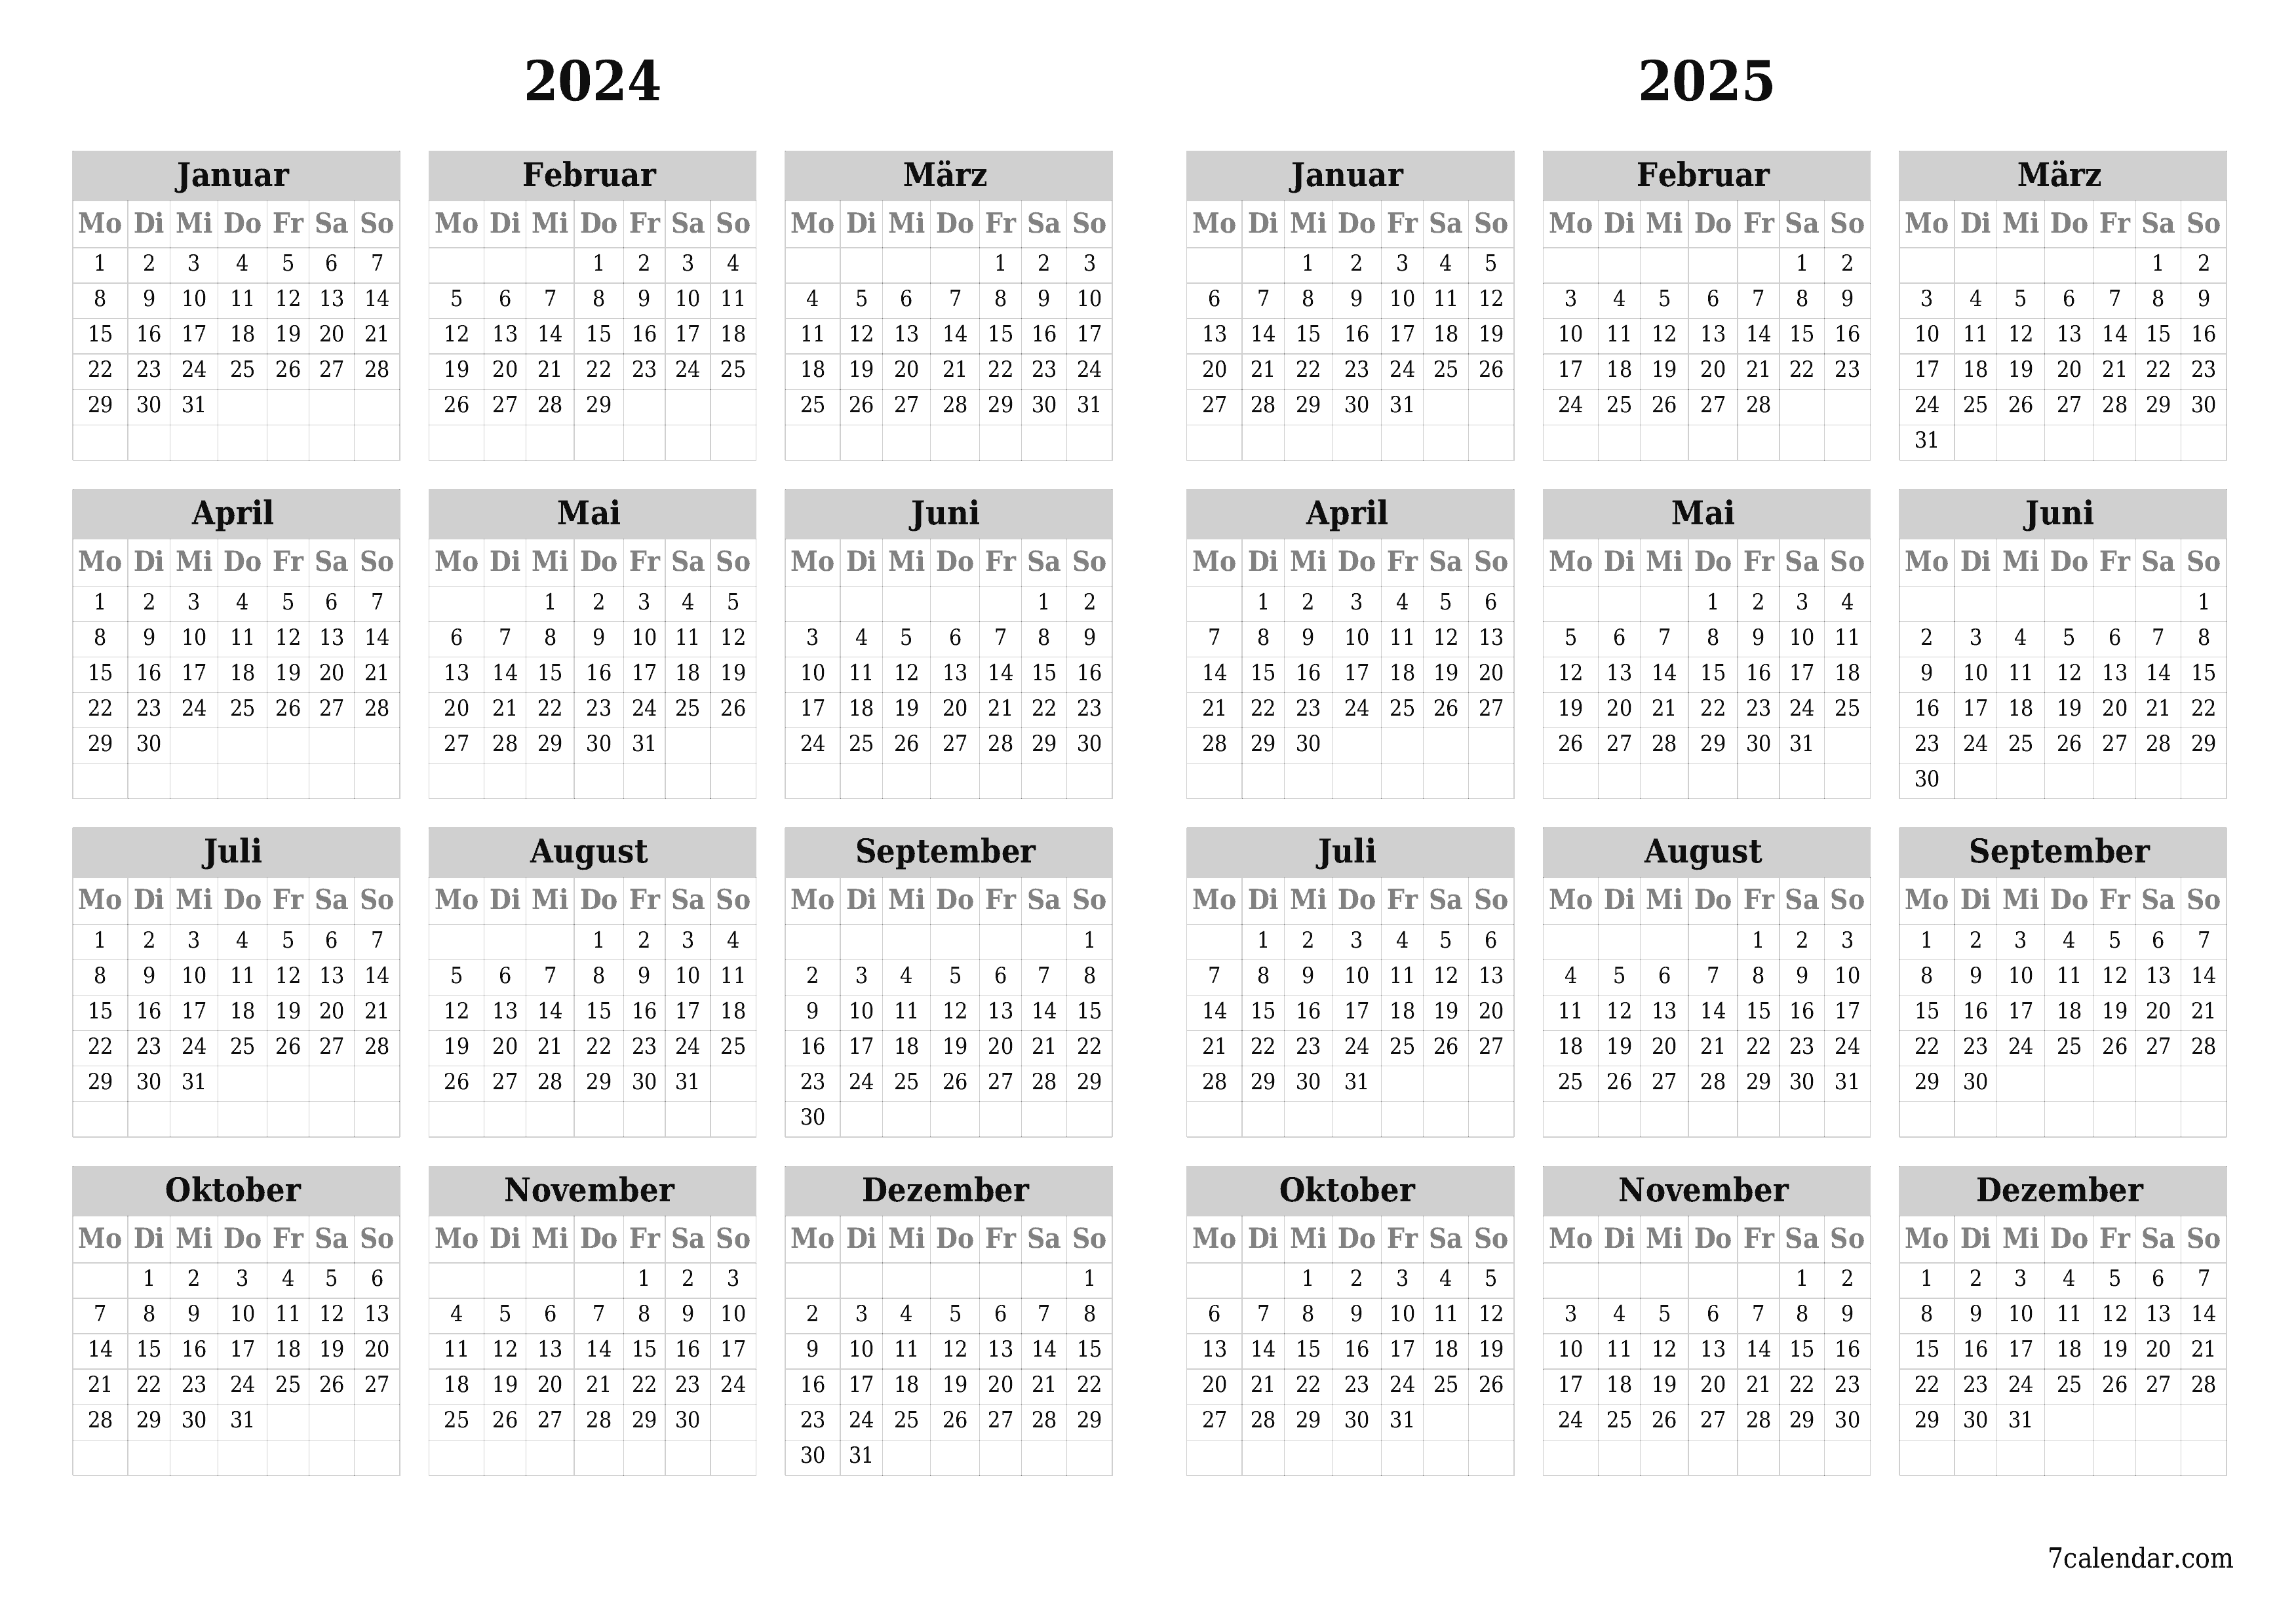 Jahresplanerkalender für das Jahr 2024, 2025 mit Notizen leeren, speichern und als PDF PNG German - 7calendar.com drucken